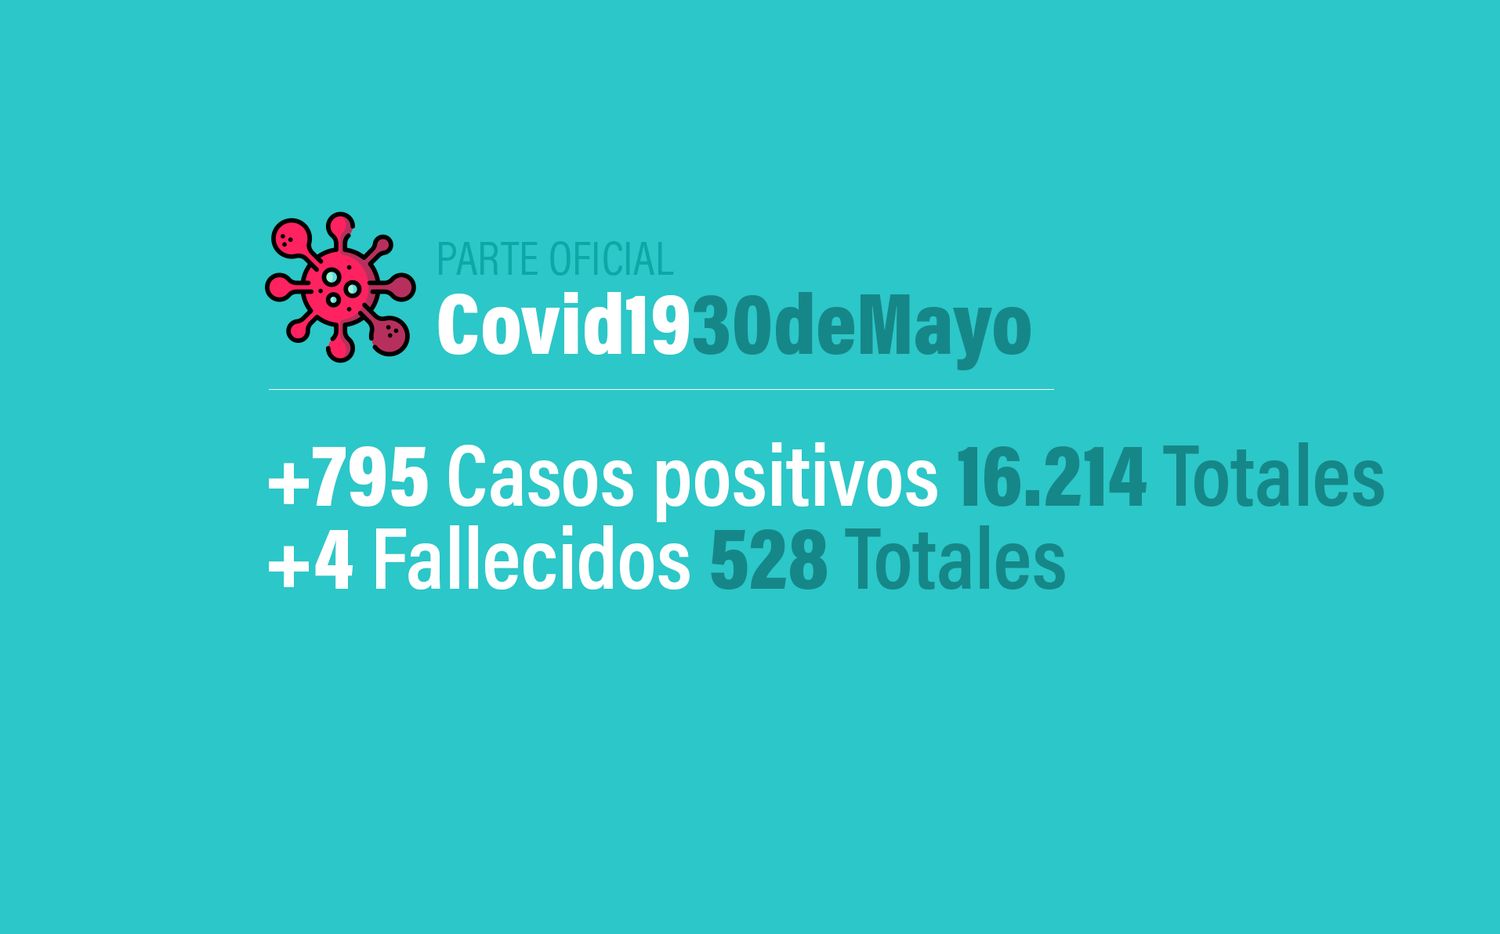 Coronavirus en Argentina: 795 nuevos casos, 16214 confirmados y 528 muertes, al 30 de mayo